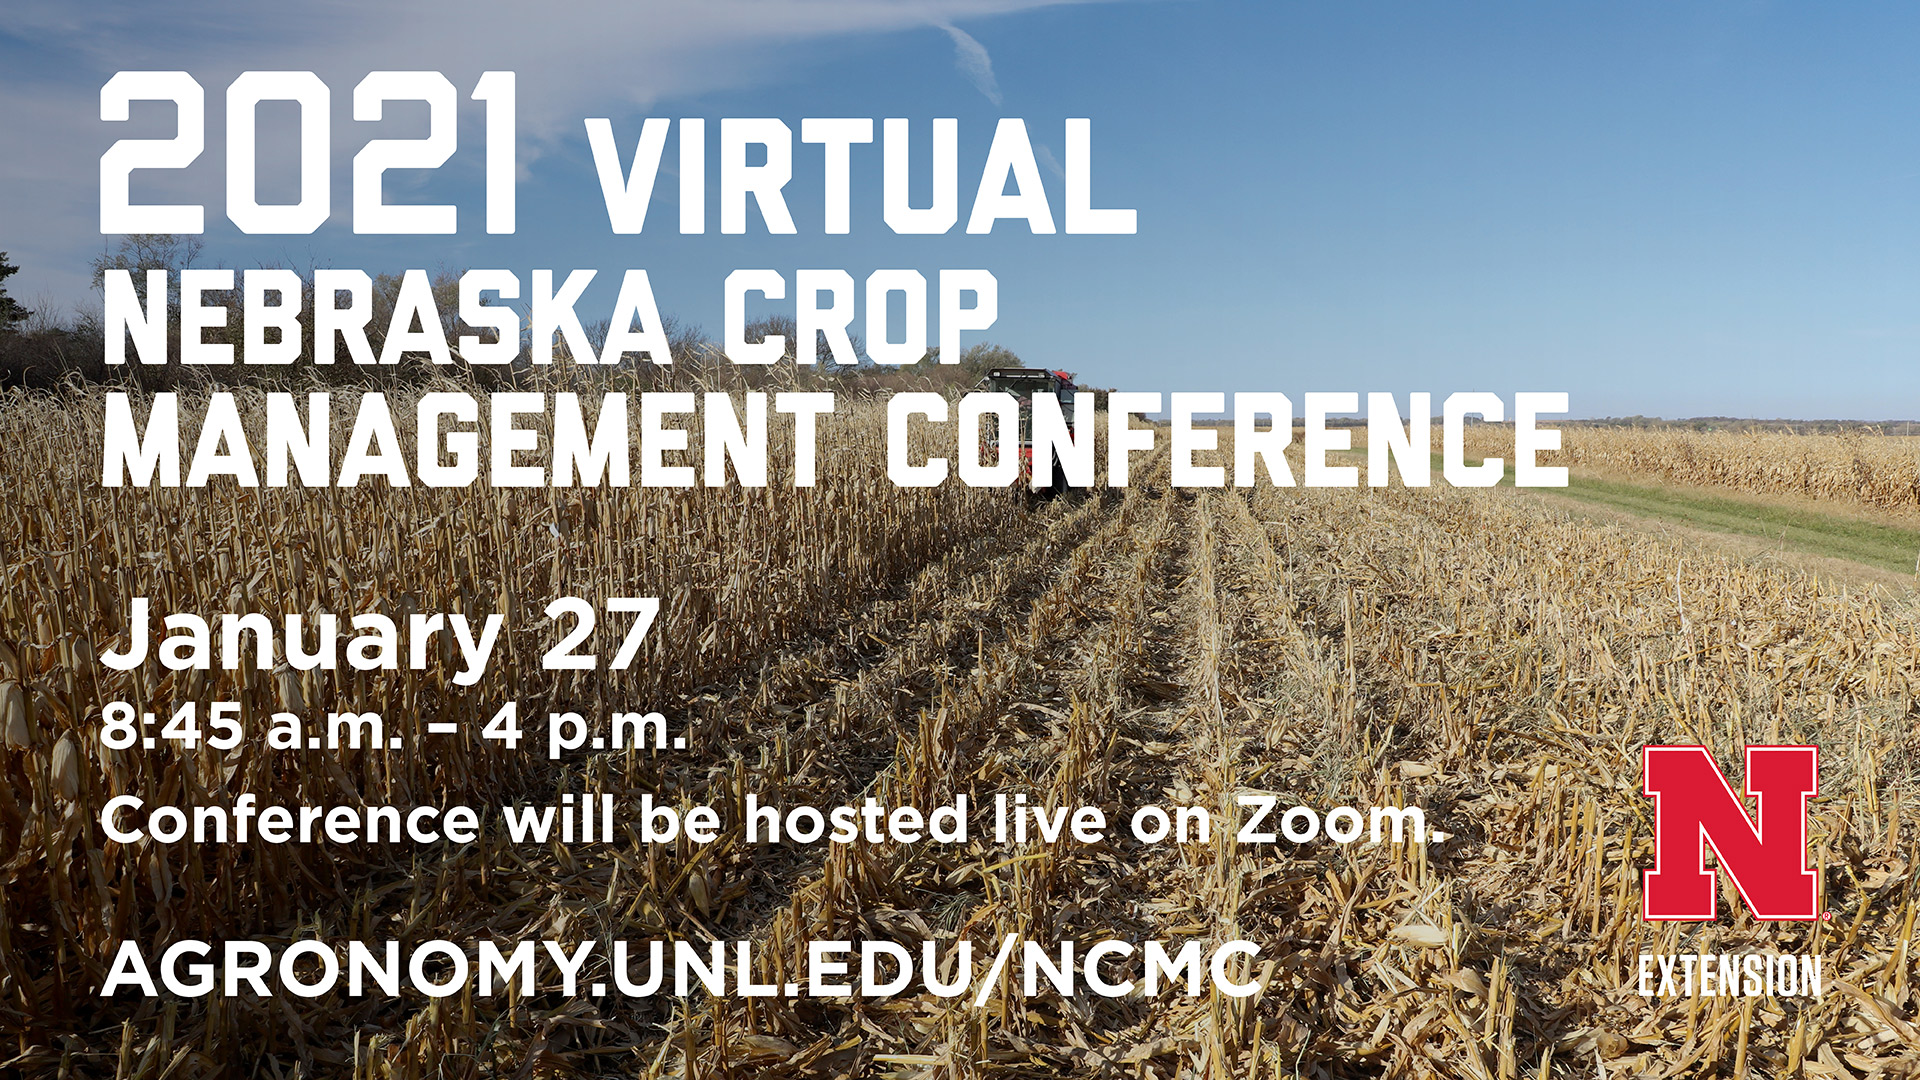 2021 Nebraska Crop Management Conference 